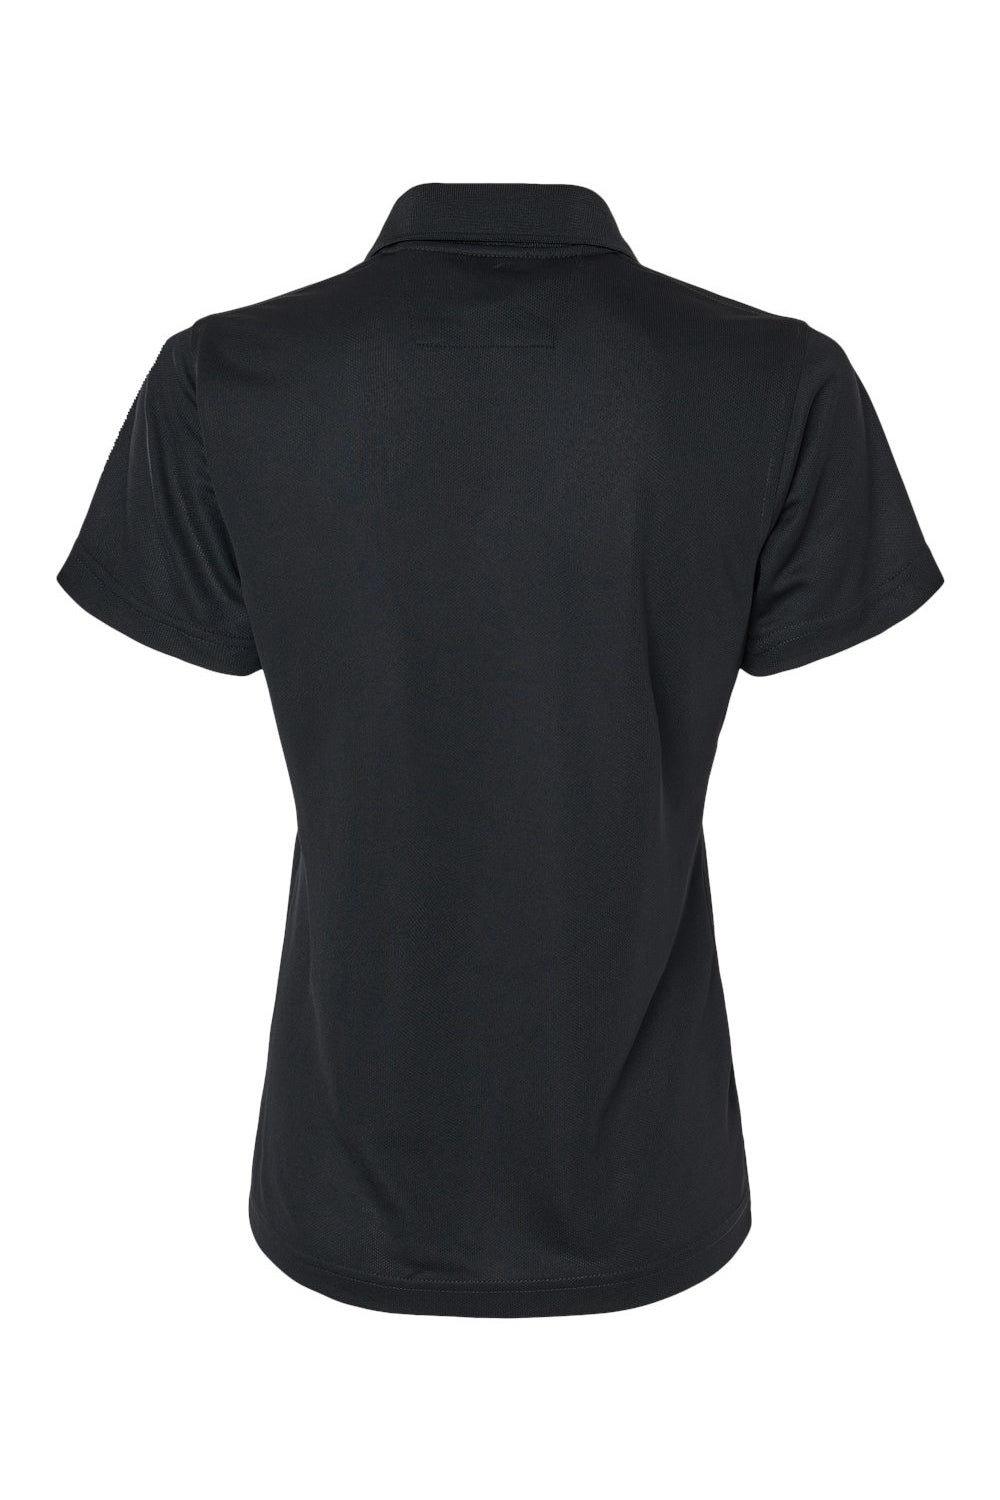 Paragon 104 Womens Saratoga Performance Mini Mesh Short Sleeve Polo Shirt Black Flat Back